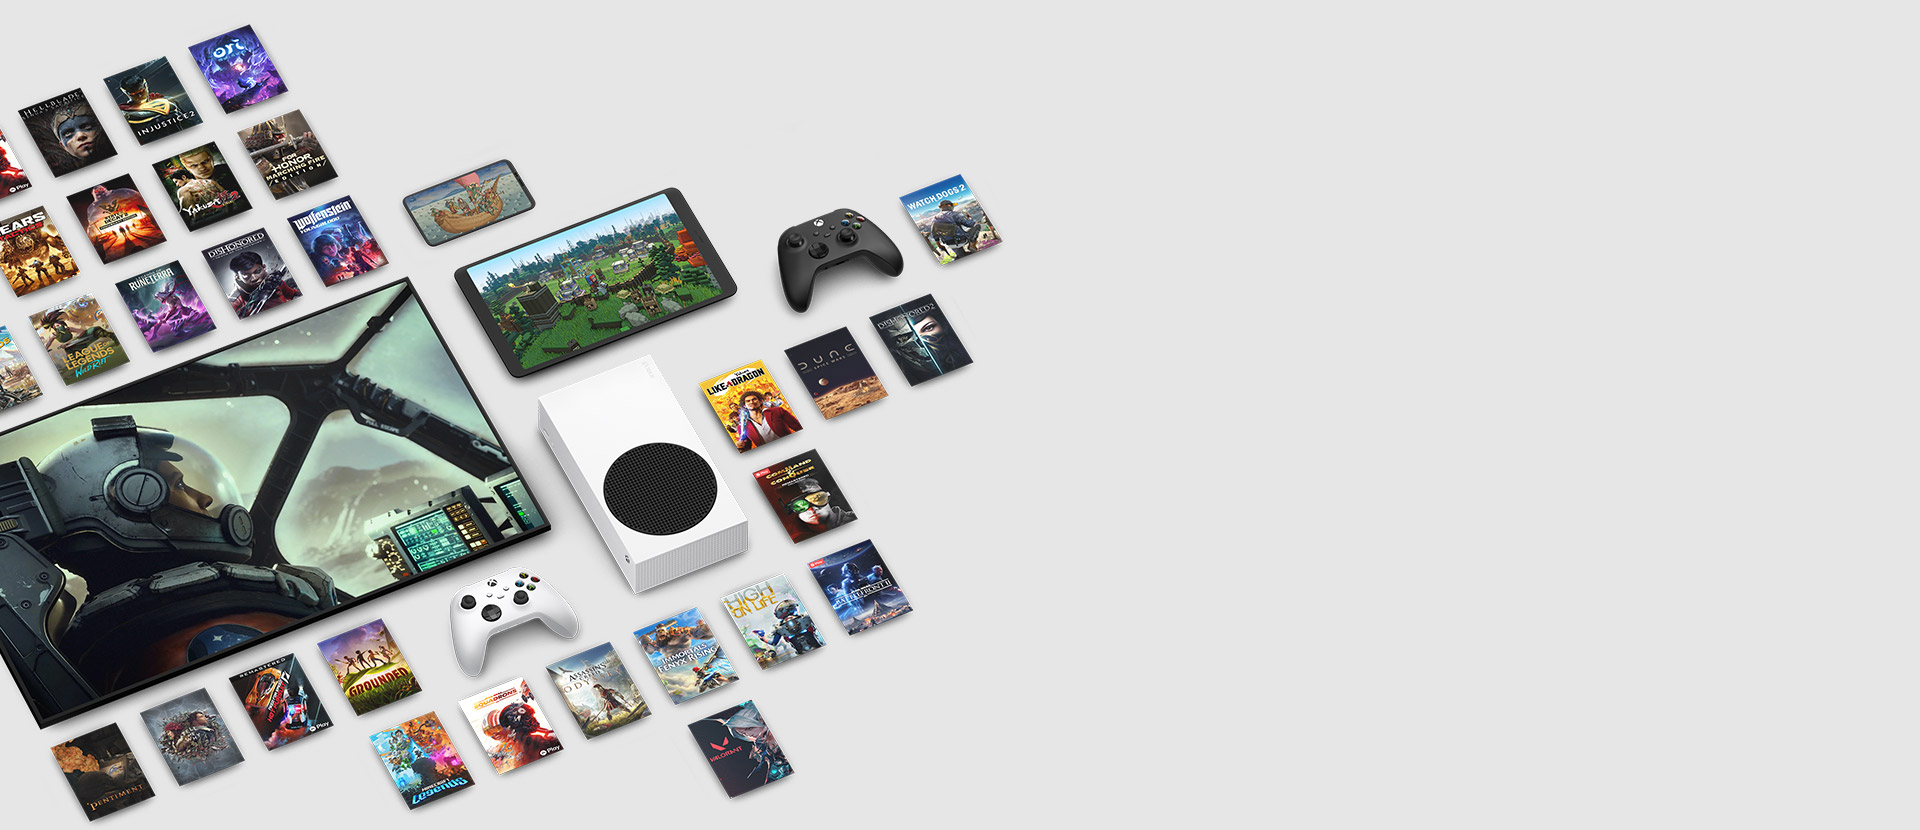 Des illustrations de plusieurs jeux disponibles dès maintenant avec le Xbox Game Pass Ultimate entourent plusieurs appareils, dont une console, un smartphone, une tablette, une TV connectée et des manettes.